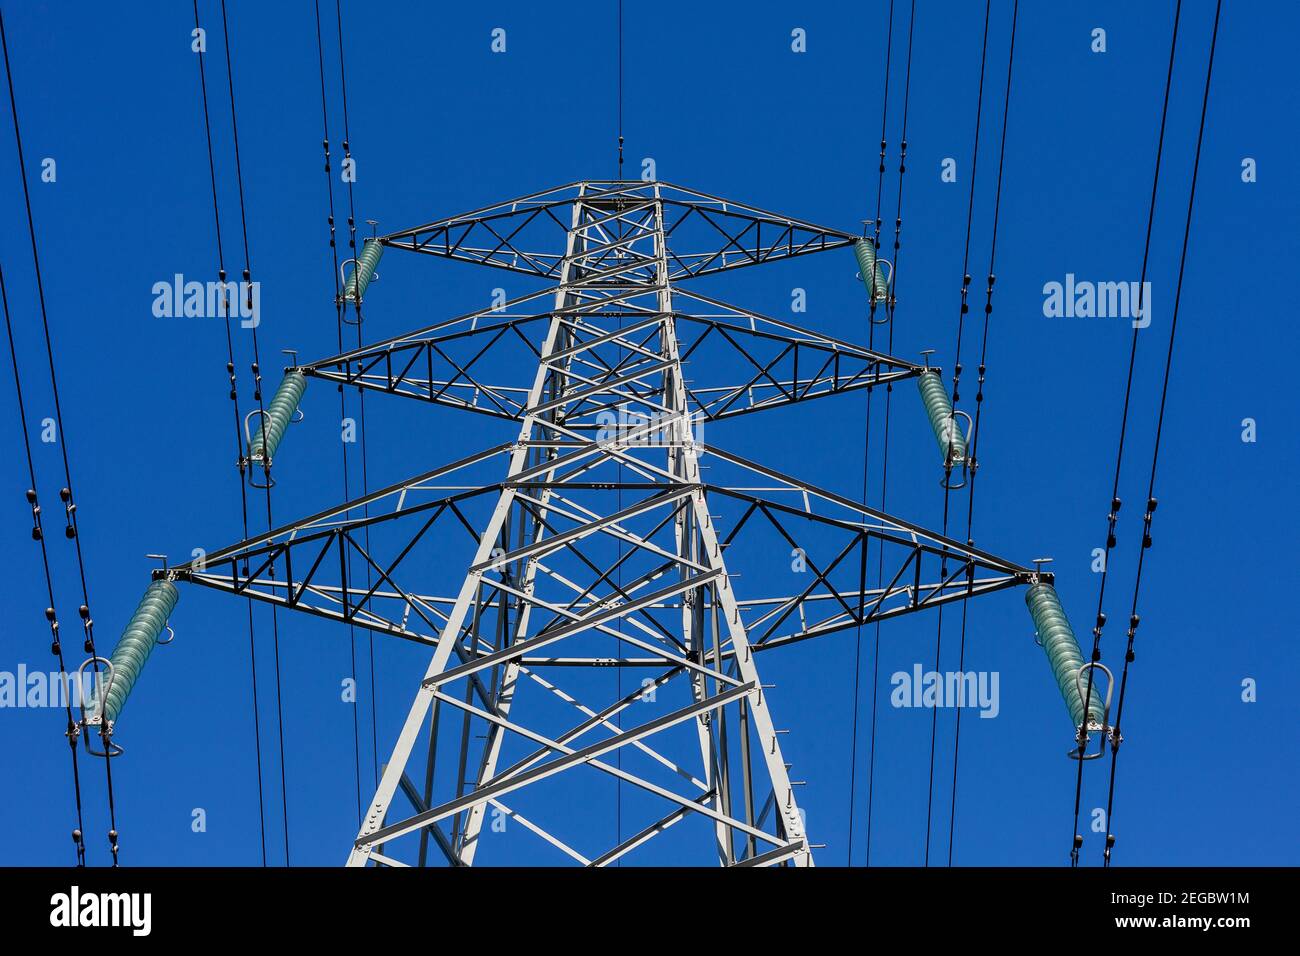 Regardez vers le haut jusqu'à un pylône électrique, des câbles électriques aériens et des isolateurs placés contre un ciel bleu clair Banque D'Images